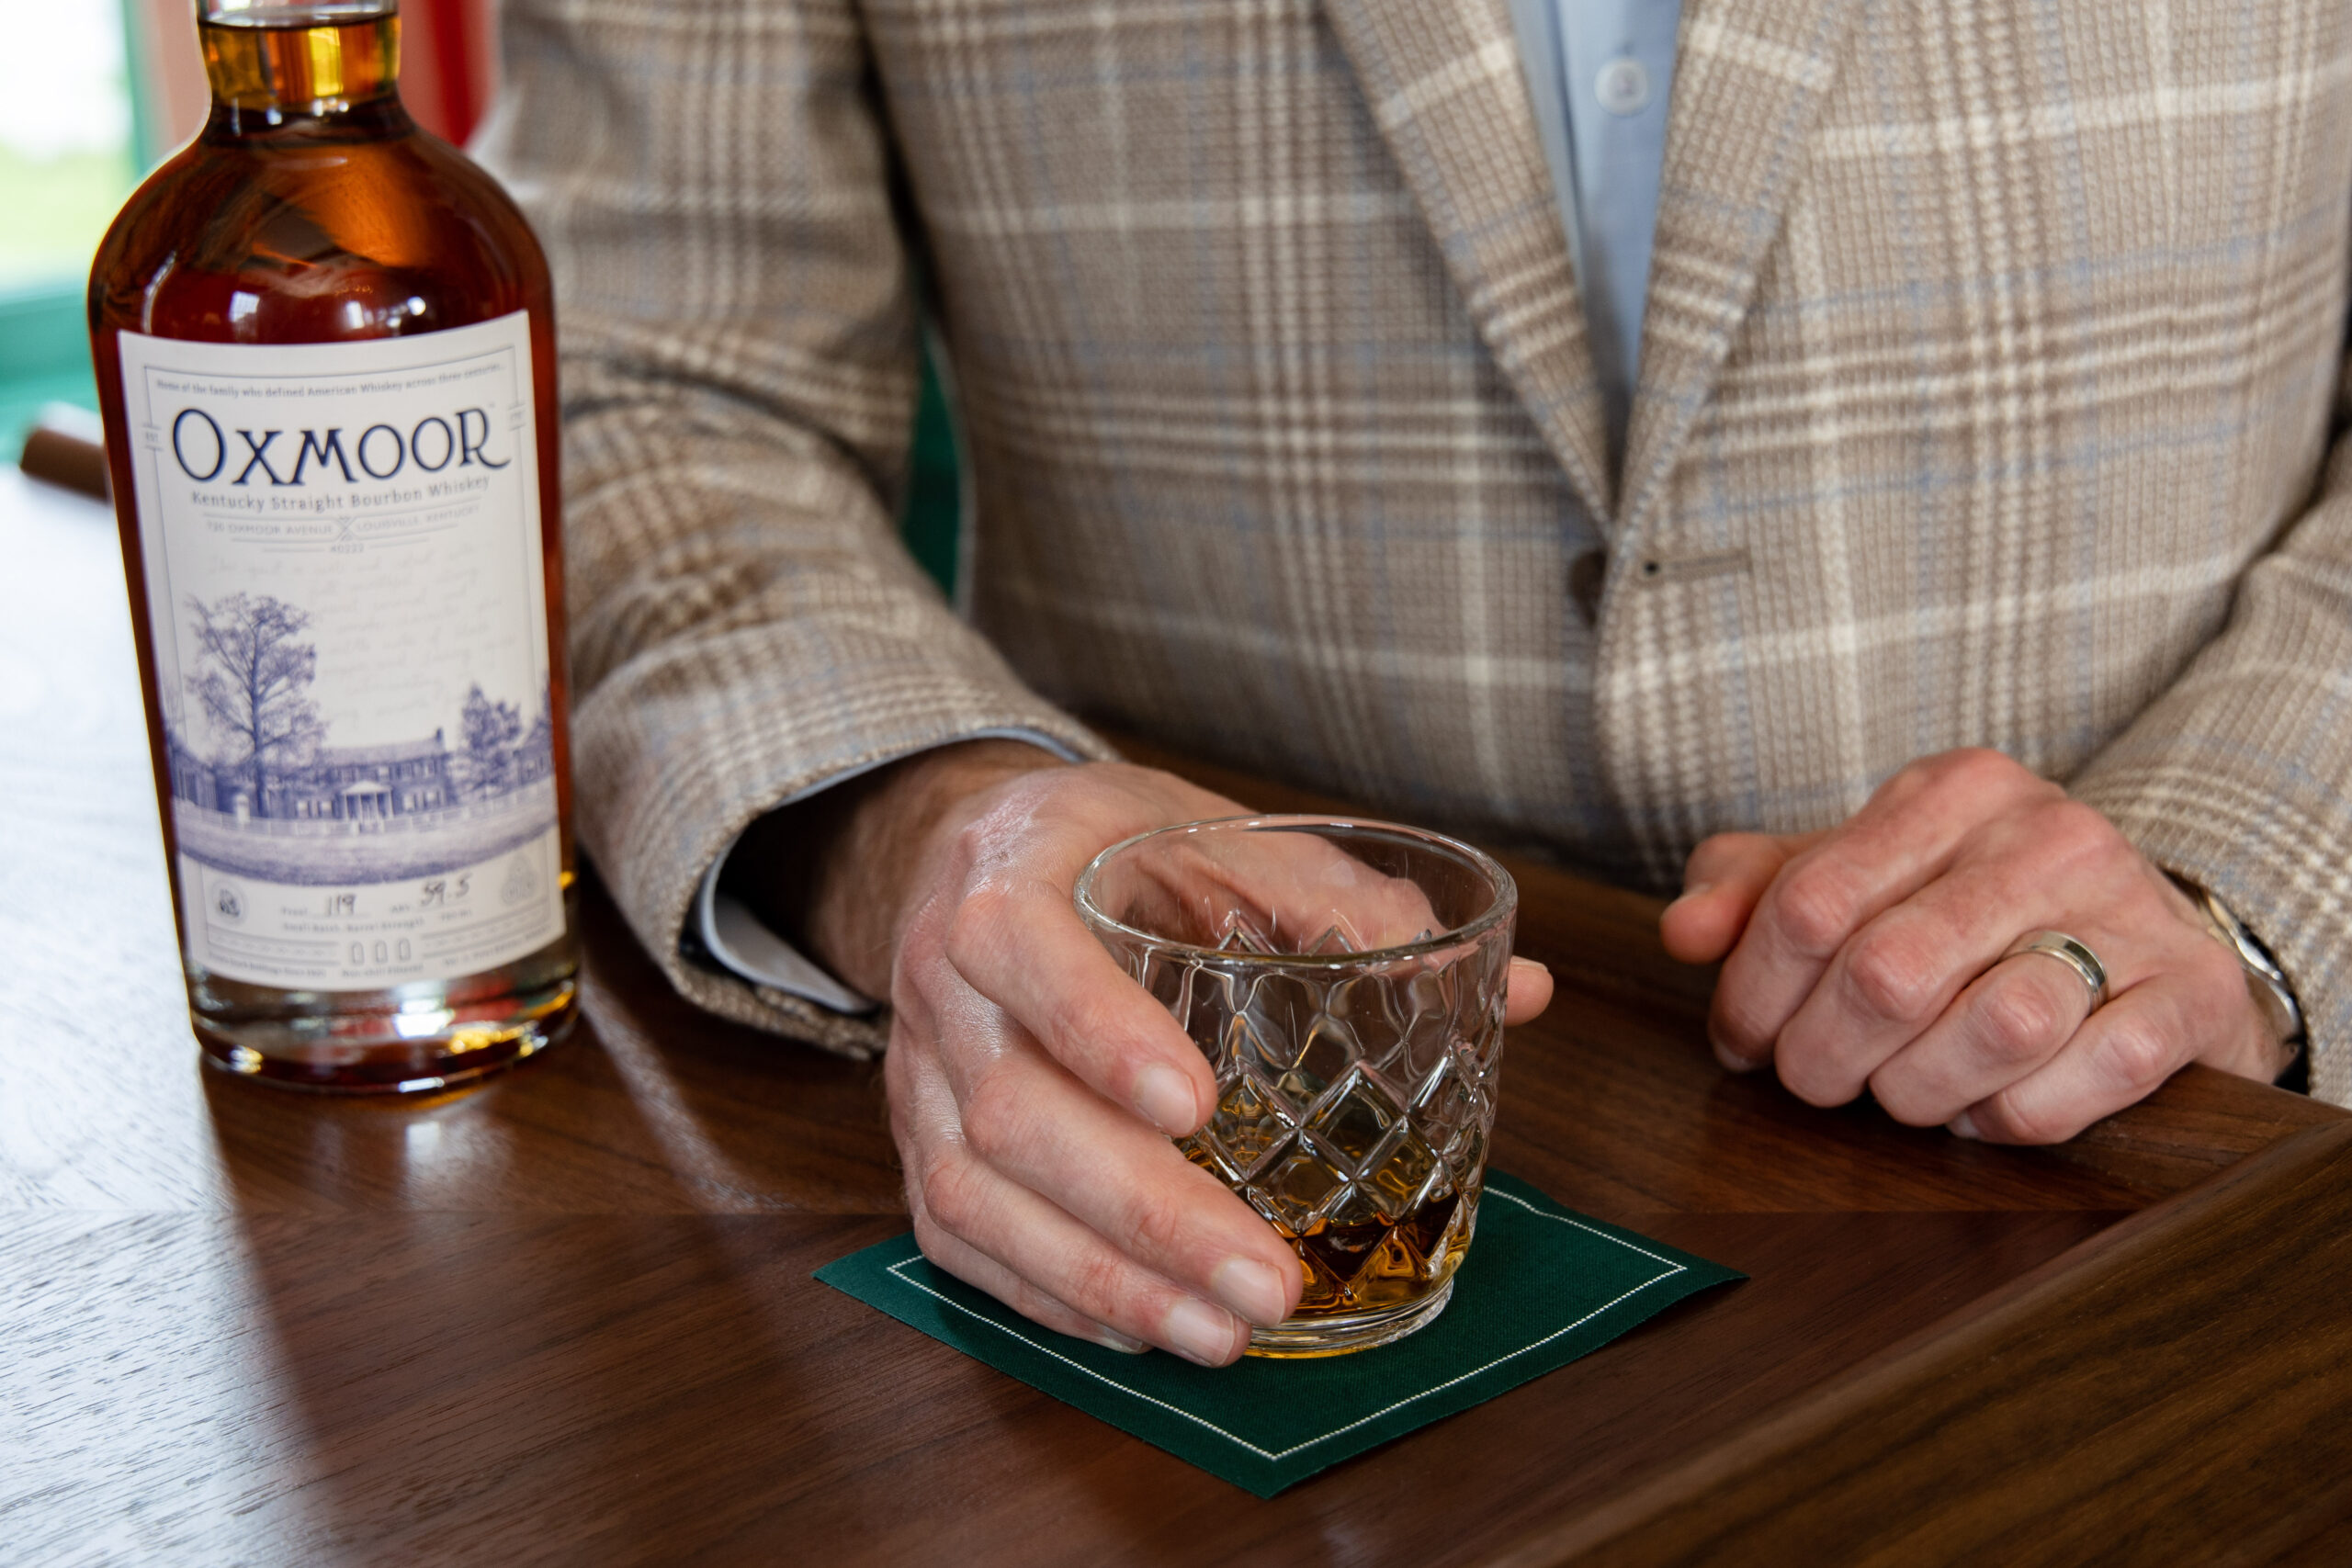 Historic Oxmoor Farm Announces New Bourbon & Tasting Experience